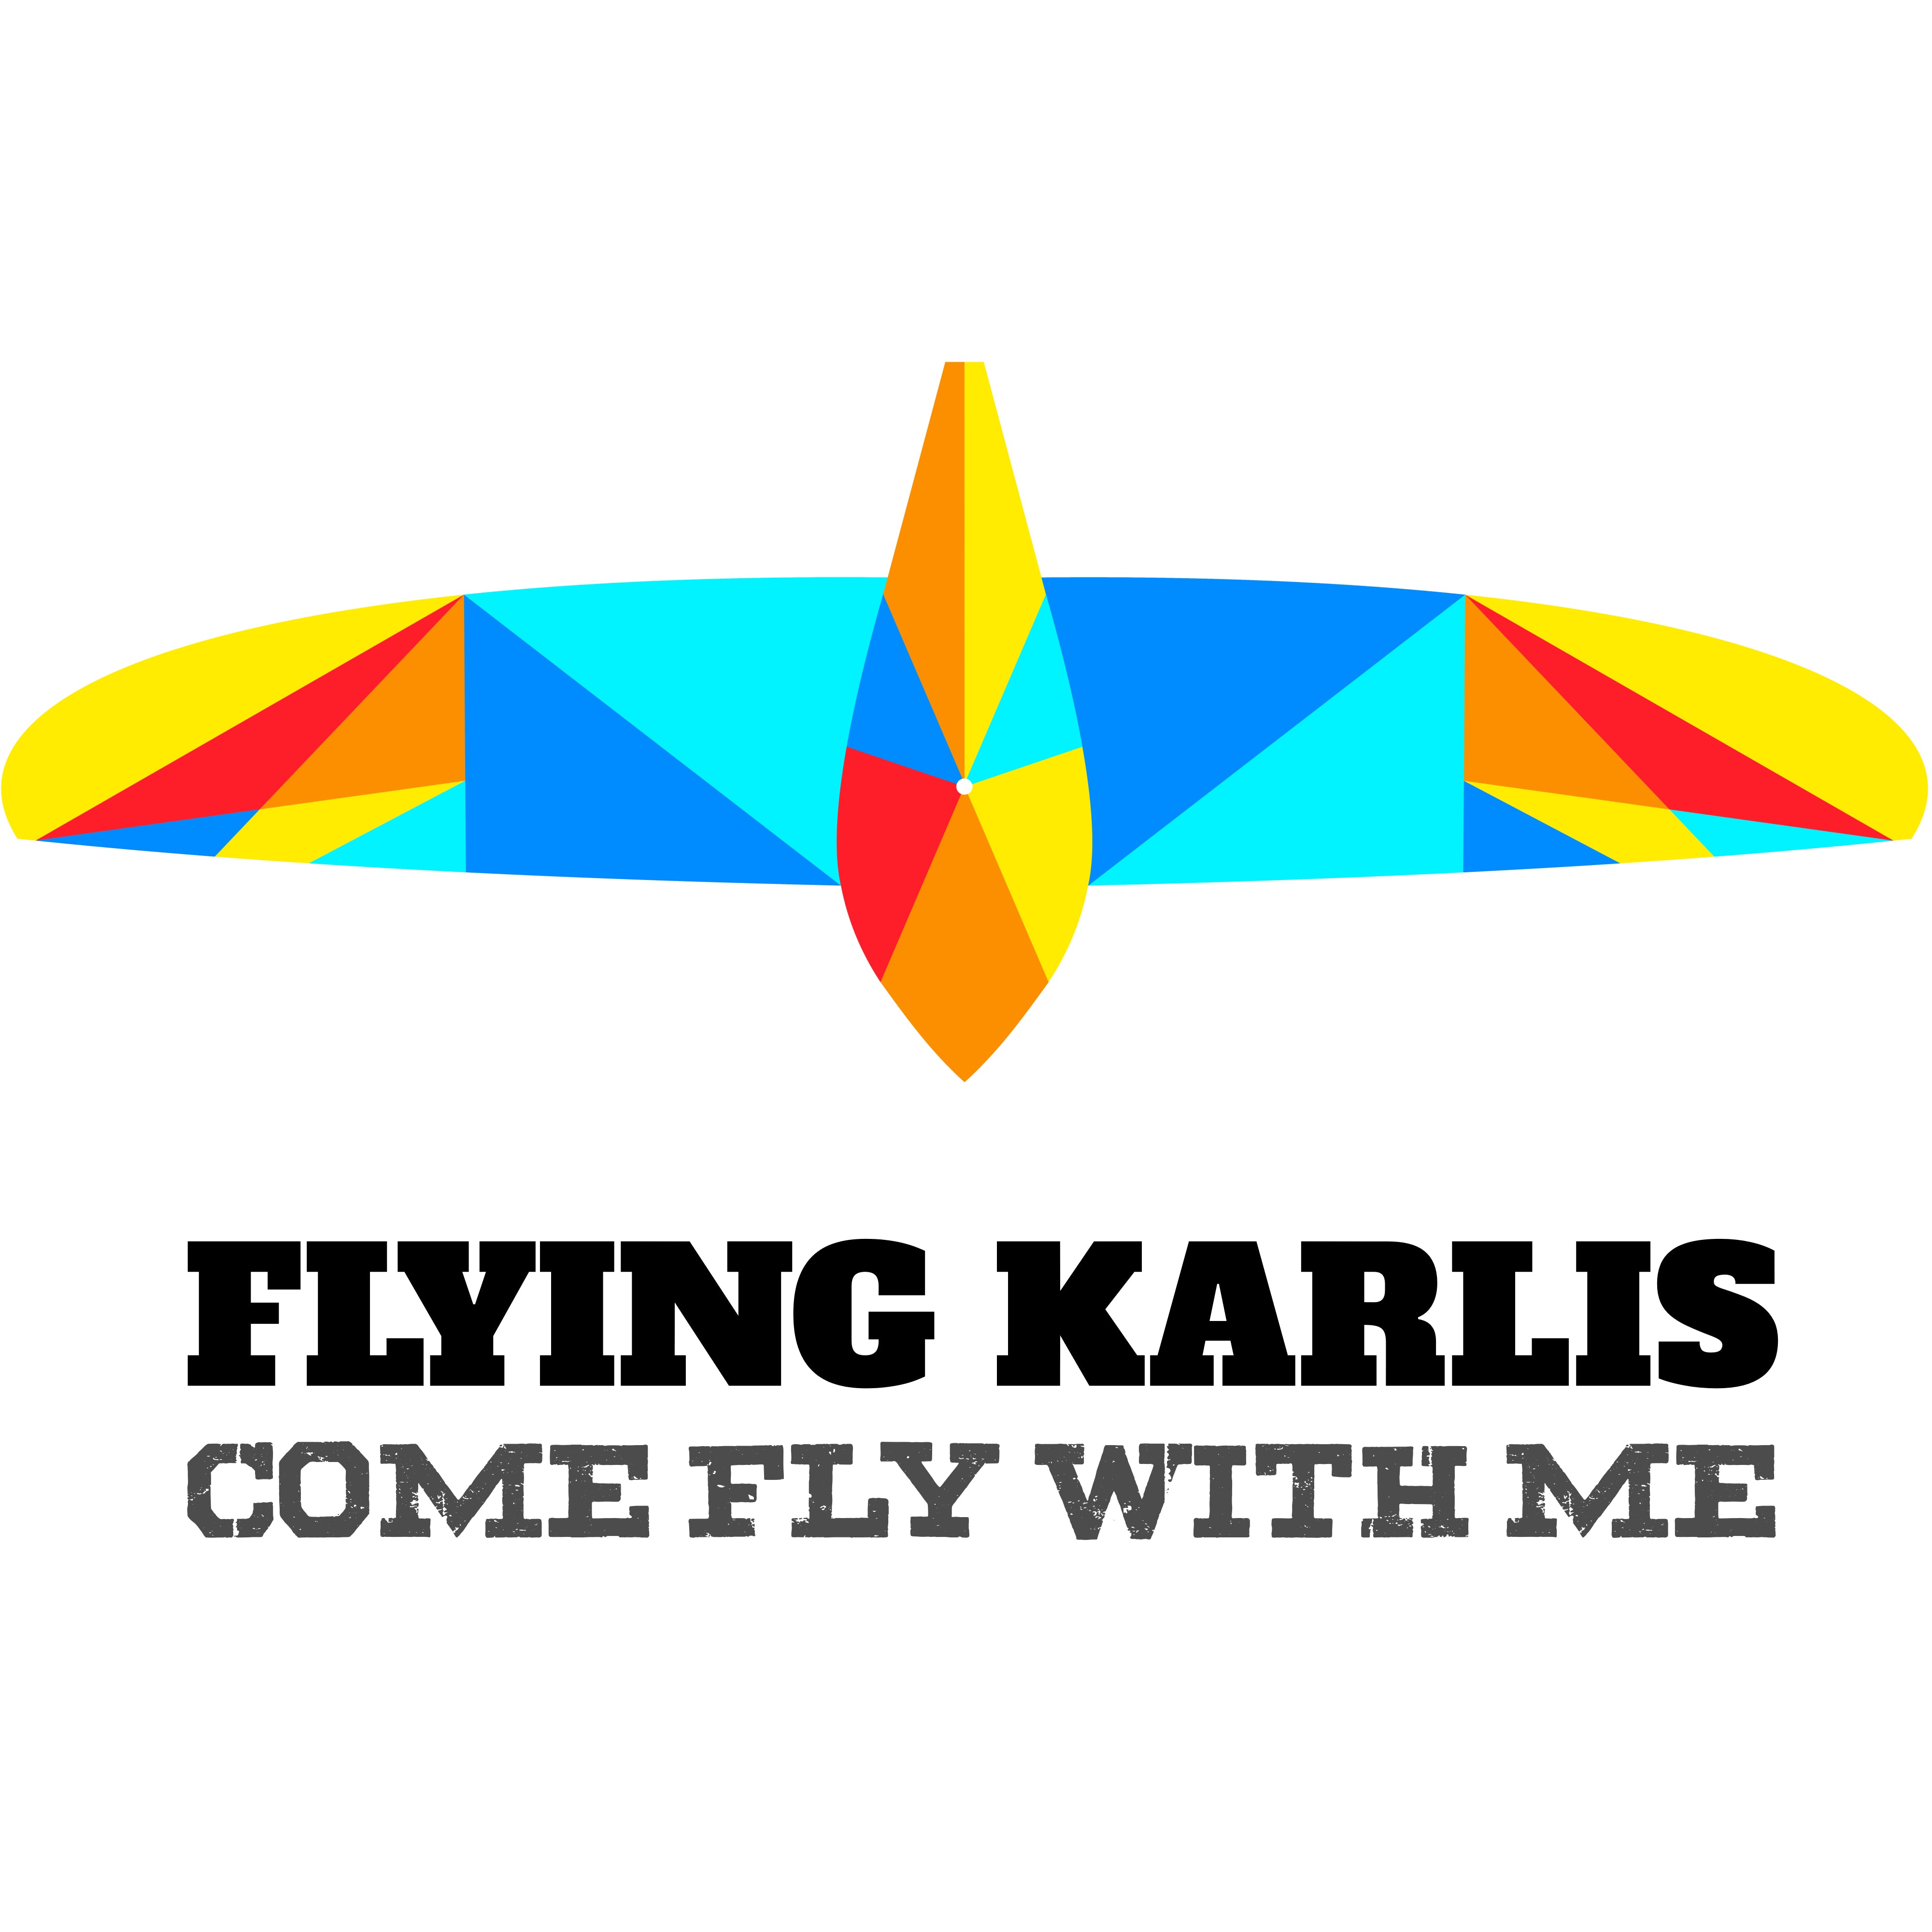 flyingkarlis